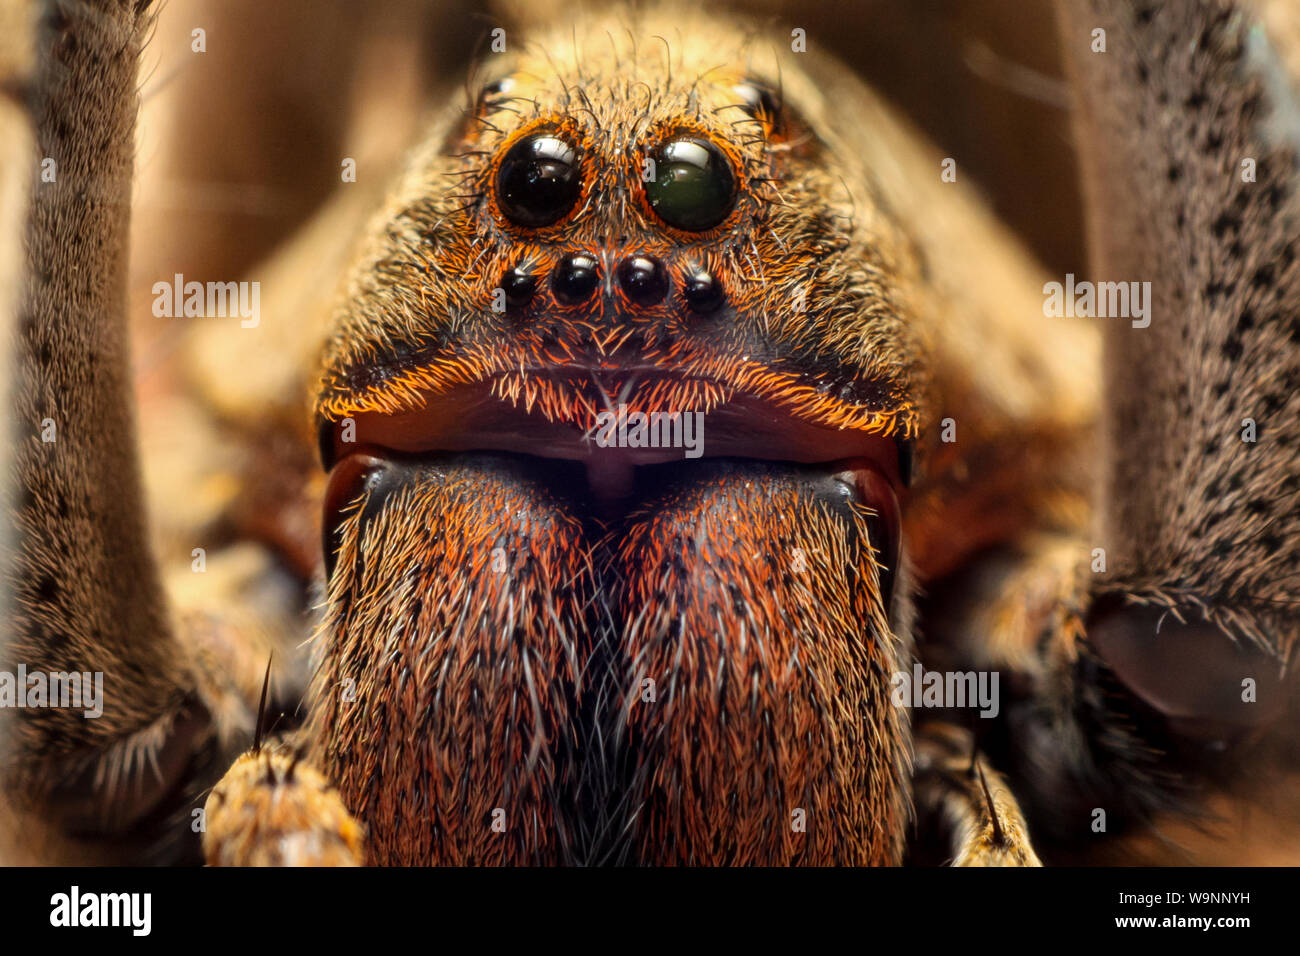 Close-up of a wolf spider (Lycosidae, Lycosa erythrognatha) commune dans les jardins, les yeux des arachnides en détail Banque D'Images